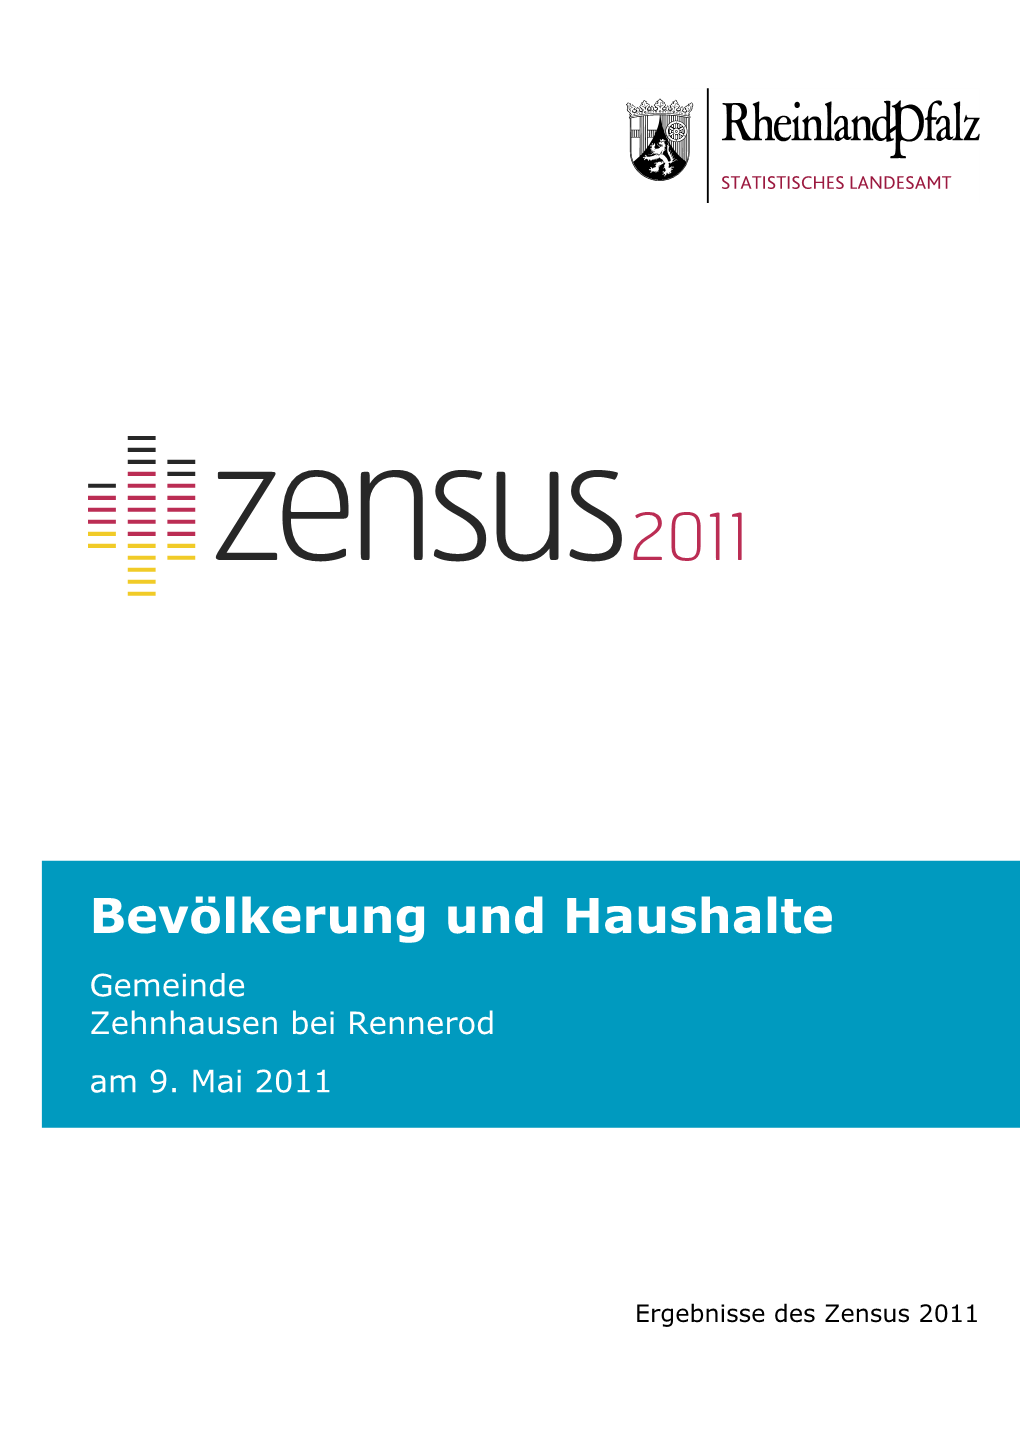 Bevölkerung Und Haushalte Am 9. Mai 2011, Zehnhausen Bei Rennerod